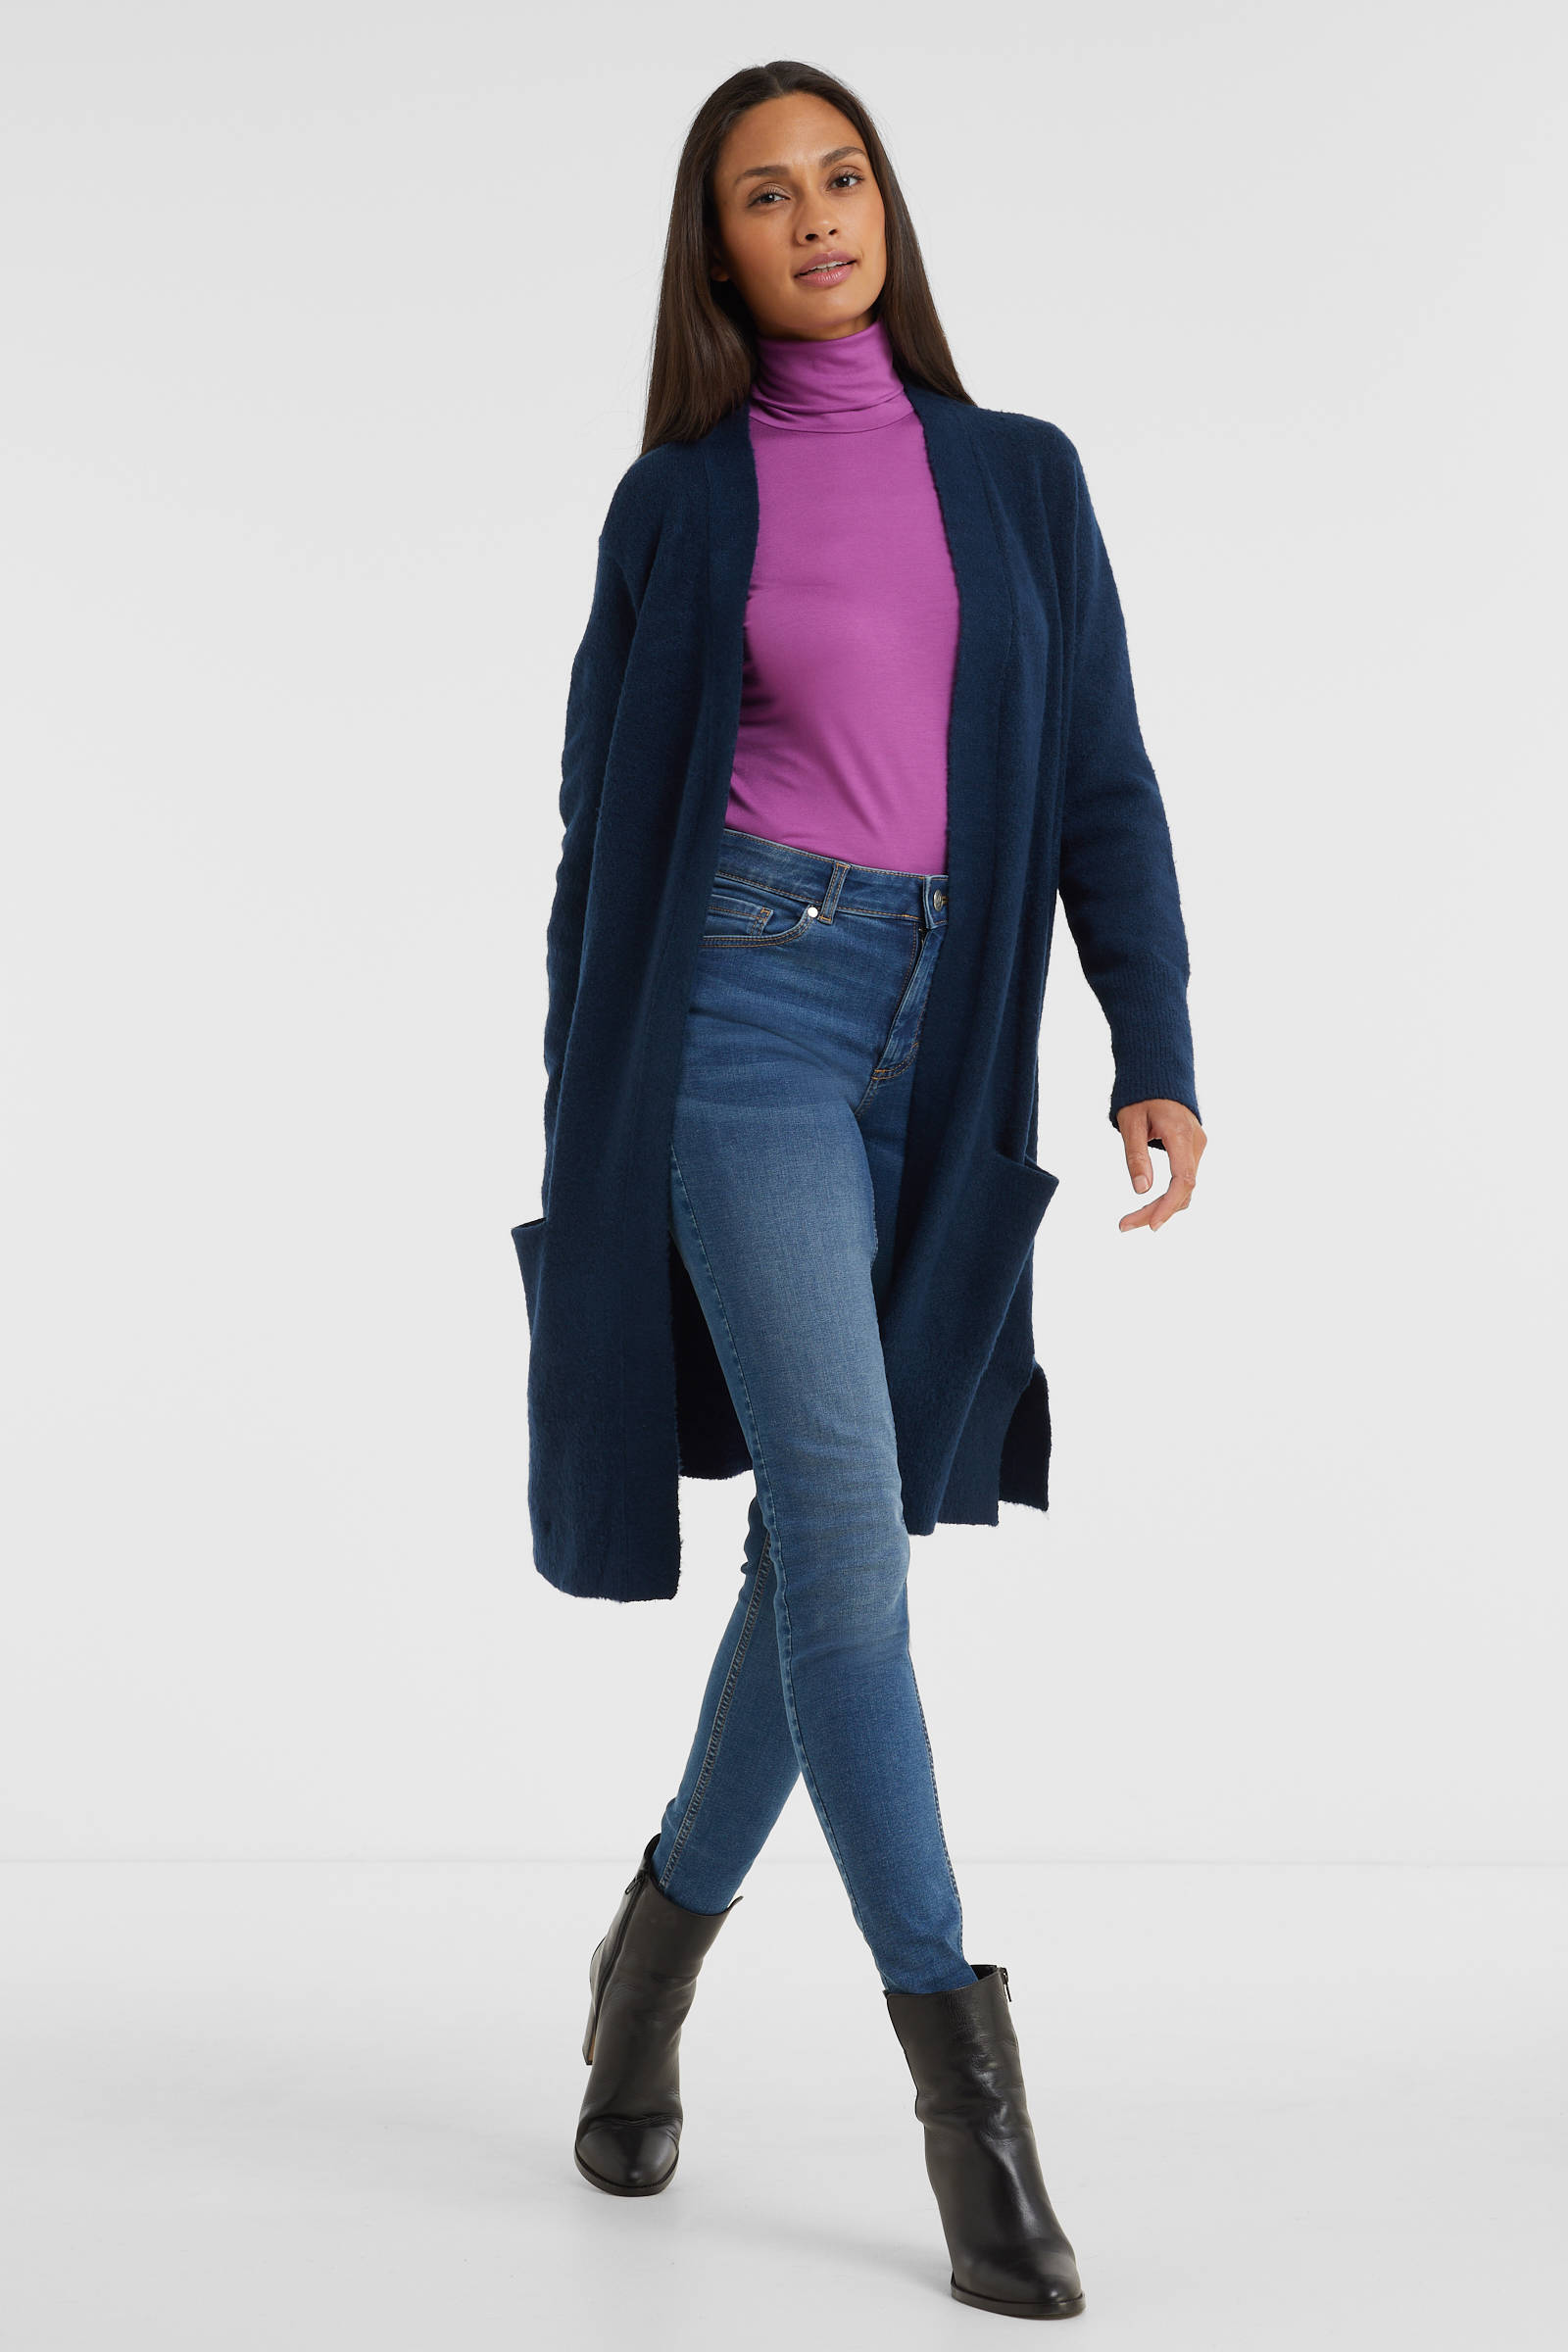 Mode Vesten Lange gebreide vesten Bianca Lang gebreid vest blauw-donkerblauw zakelijke stijl 